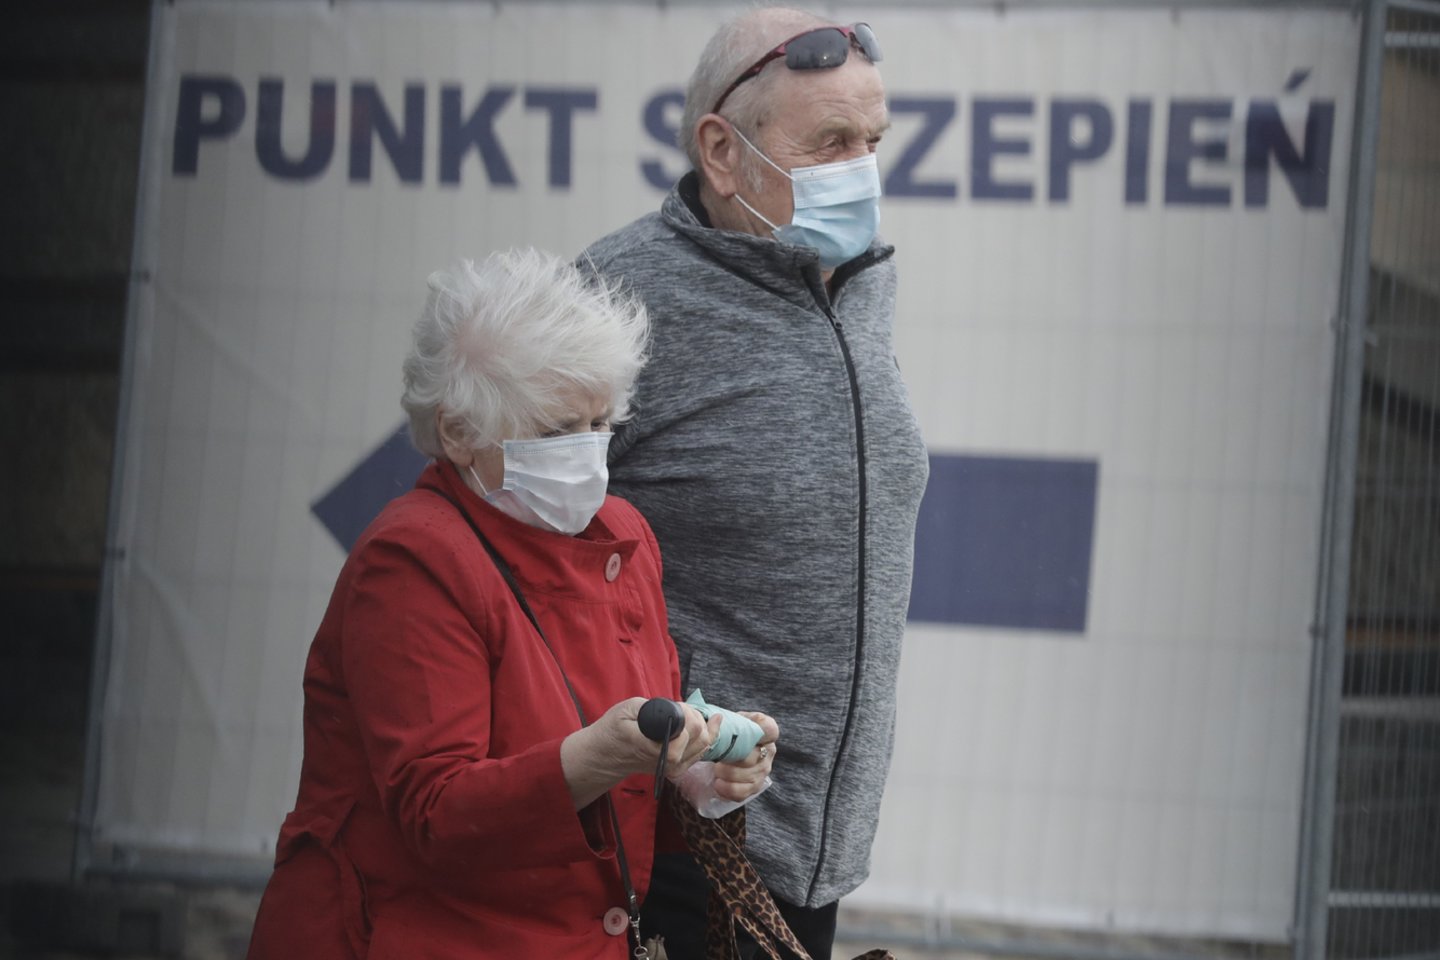 Lenkijoje opozicija tiek skiepų akciją, tiek apskritai kovą su pandemija vadina chaotiška ir nevykusia.<br> AP/Scanpix nuotr.